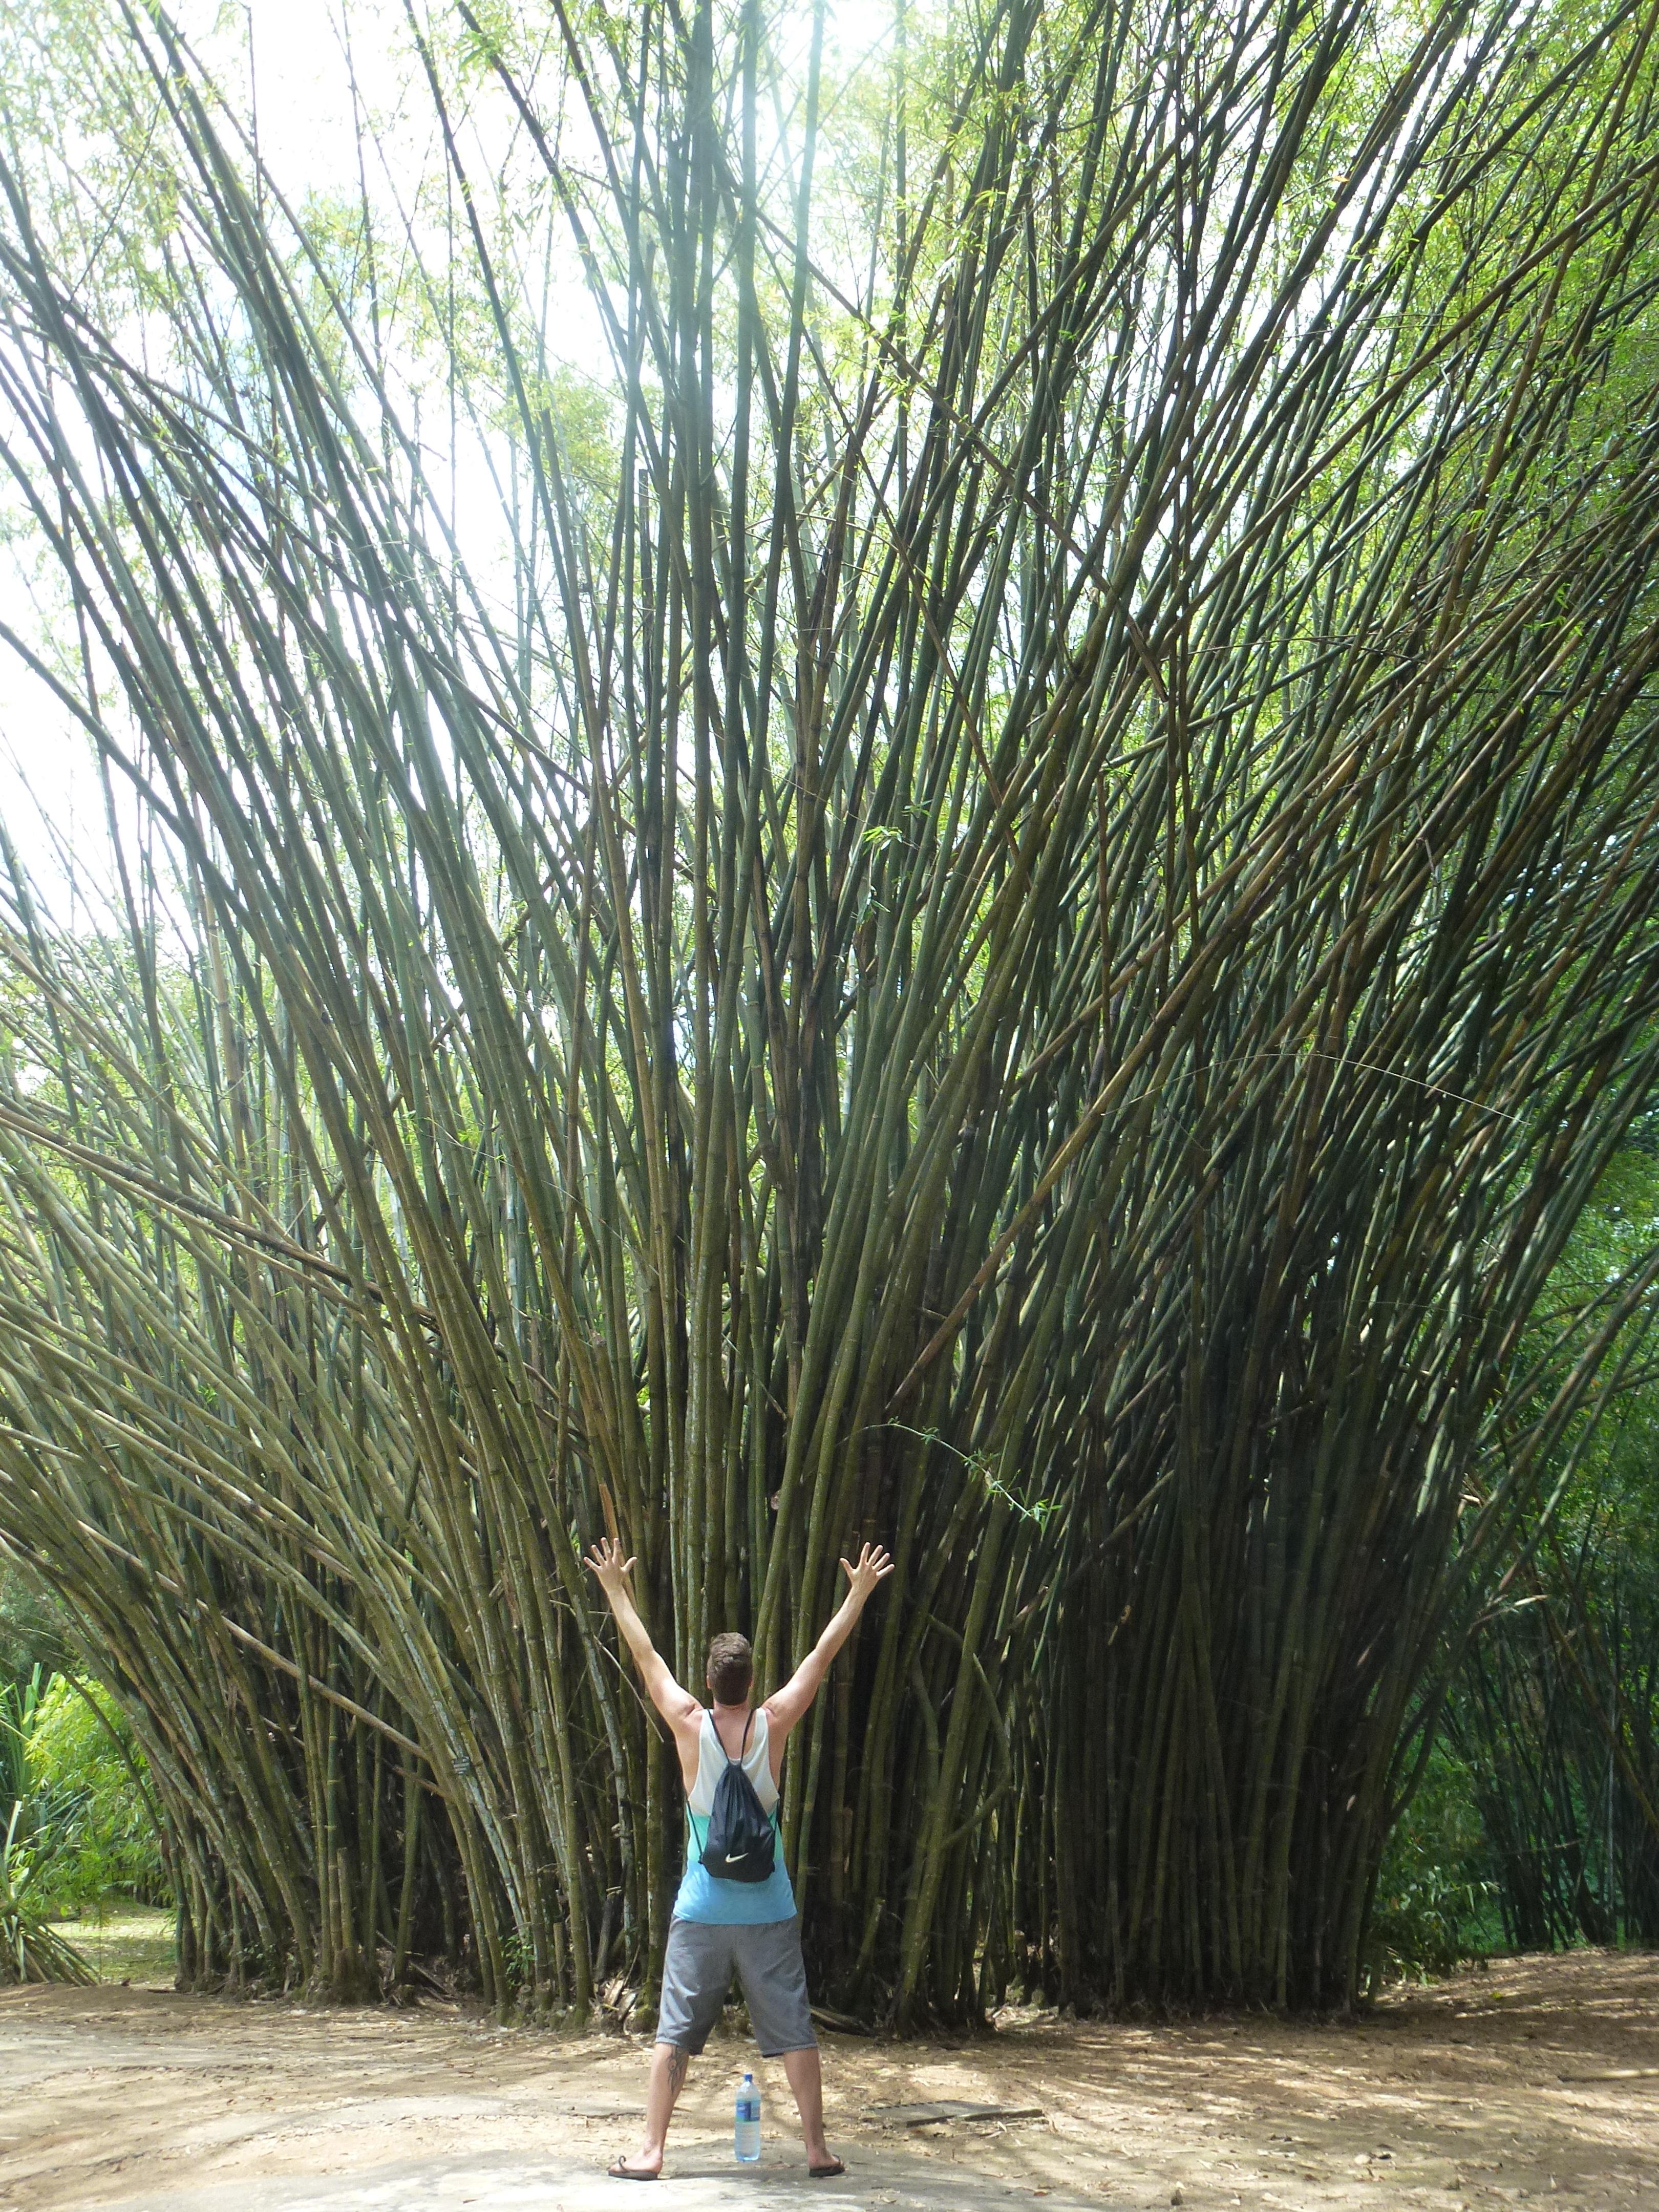 Kleiner Mann vor großem Bambus ;-)
#travel #weltreise #srilanka #botanischergarten #natur